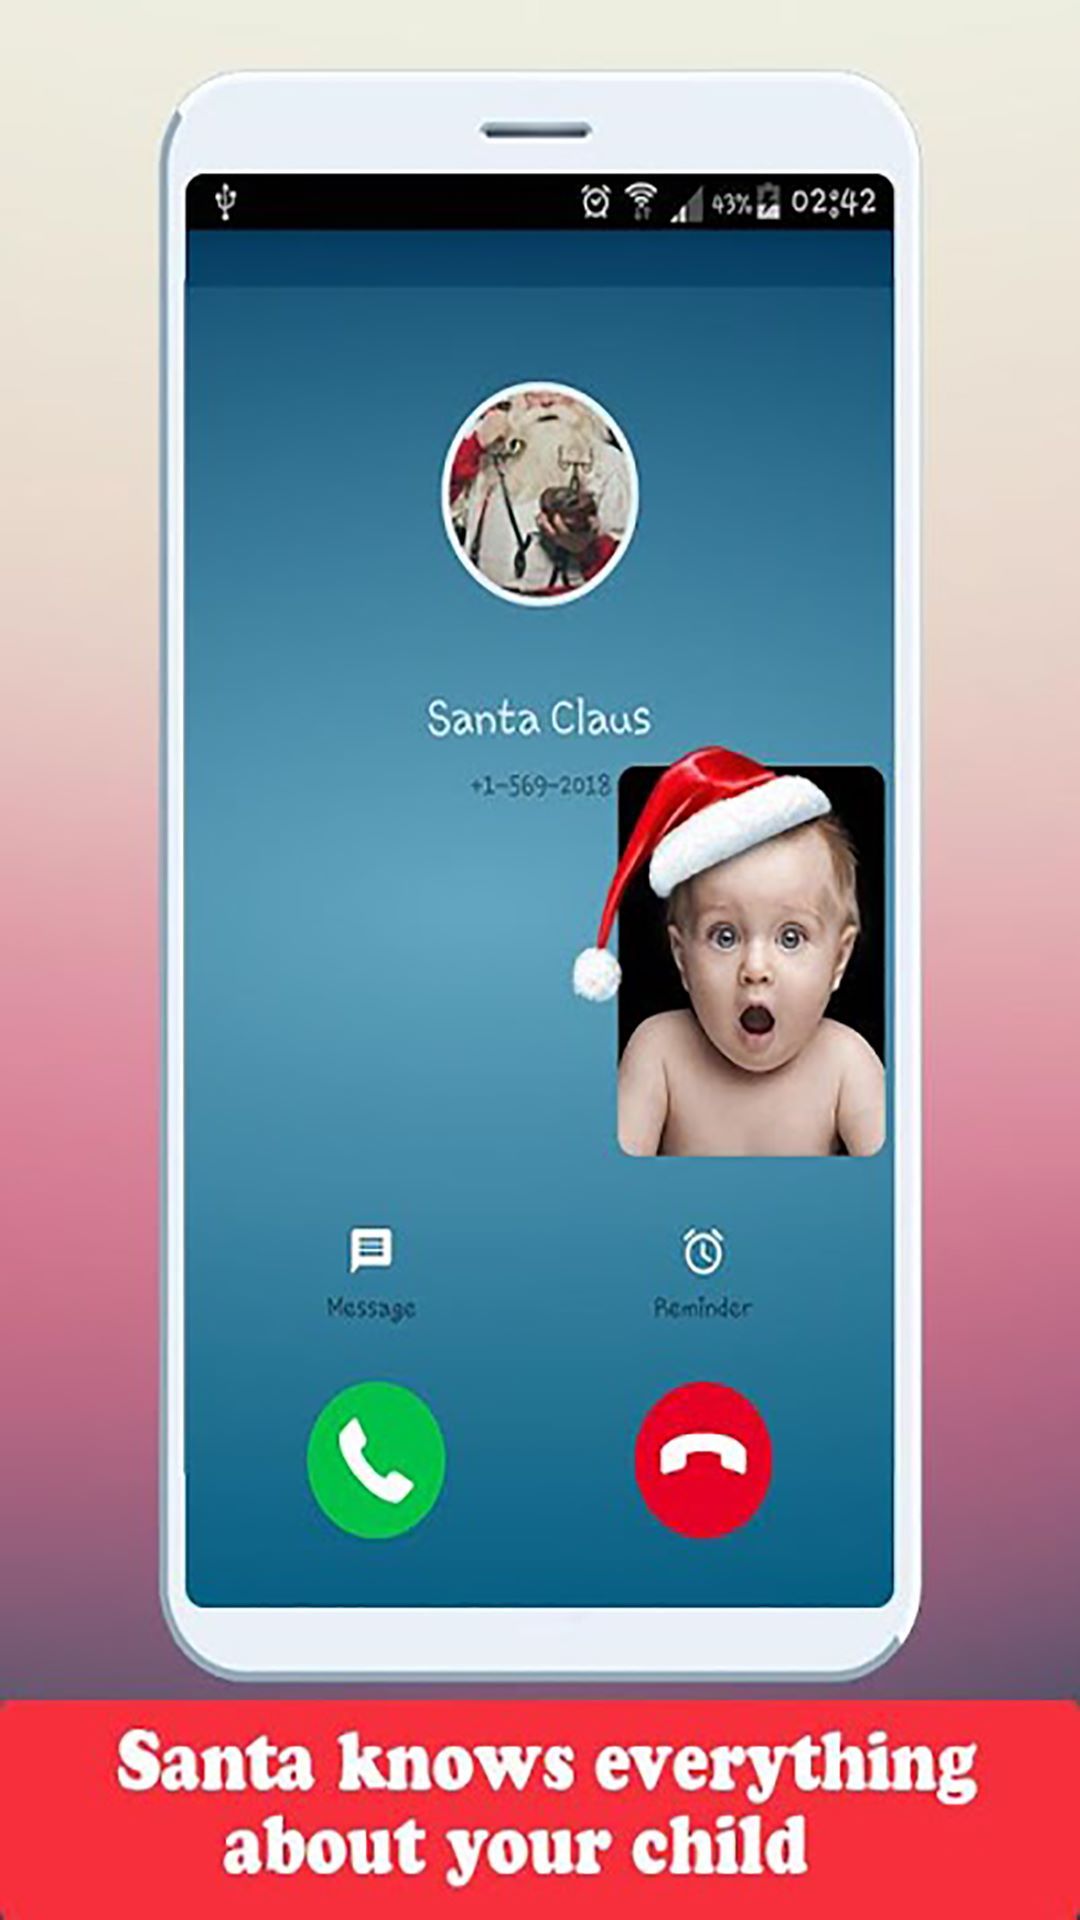 Real 🤶 Santa Claus 🎅 Video Call - Free Fake Phone Call Free Text Message - Free Fake Phone Calls ID